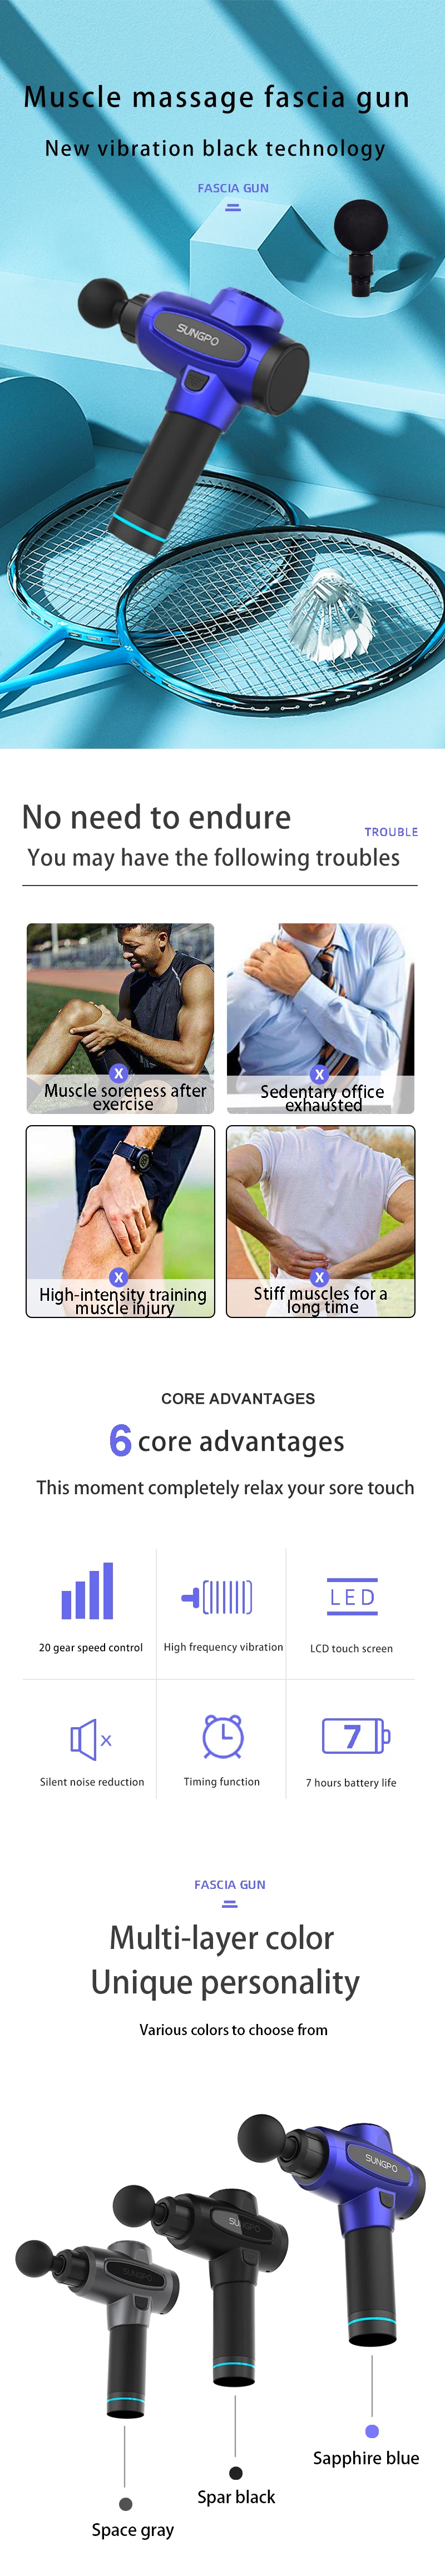 2020 Body Sports Massager Cordless Deep Tissue Muscle Vibration Massage Gun